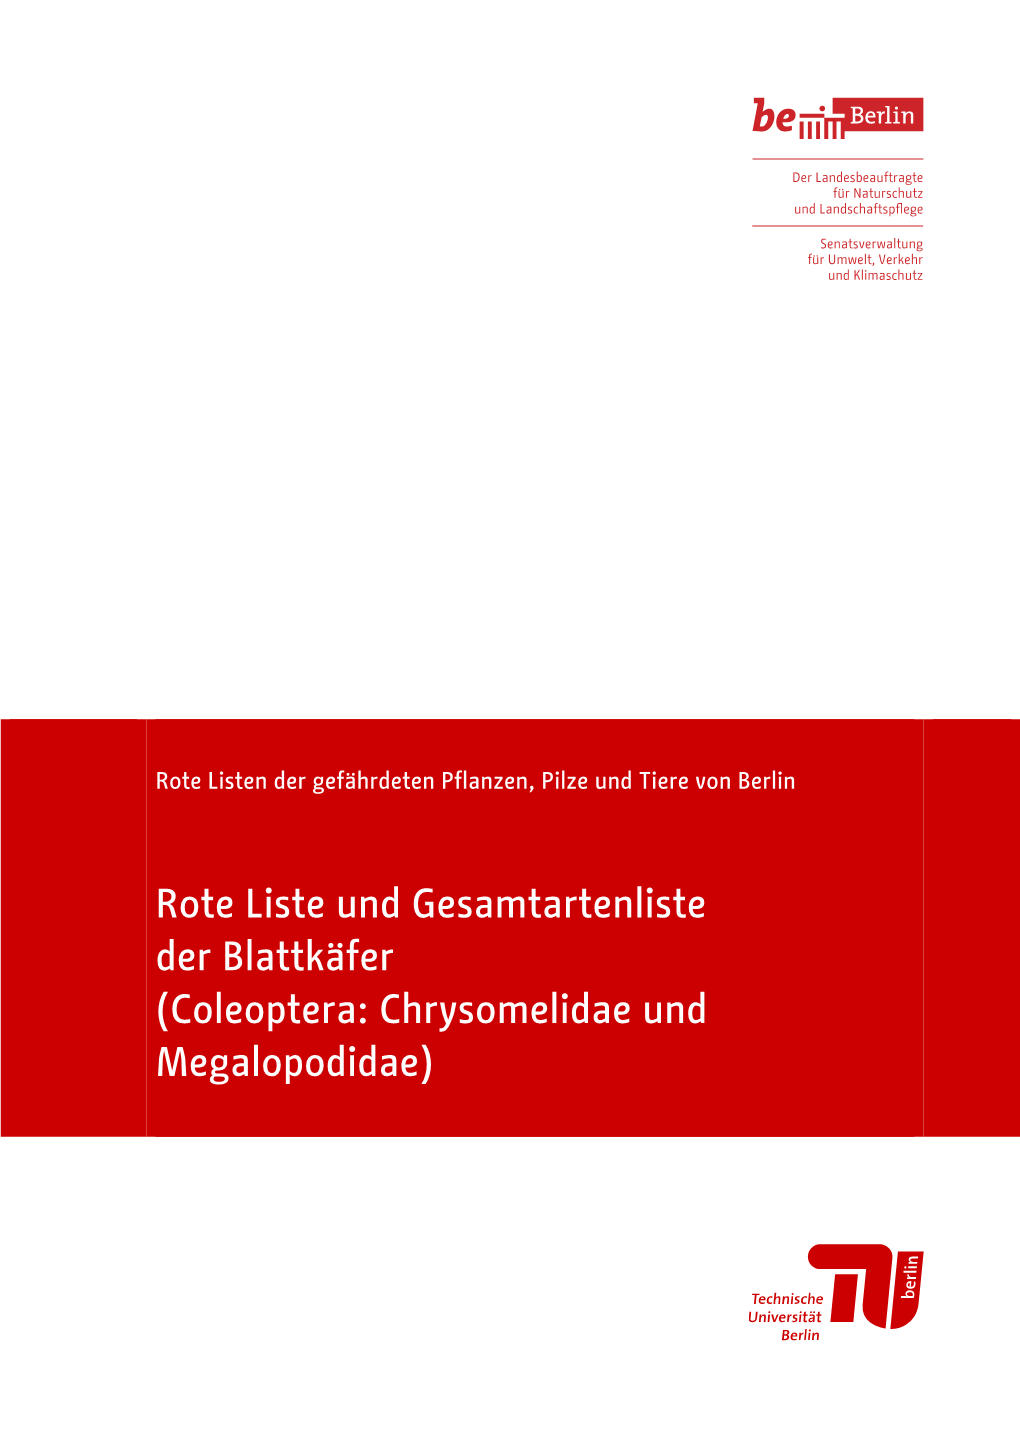 Rote Liste Und Gesamtartenliste Der Blattkäfer (Coleoptera: Chrysomelidae Und Megalopodidae)